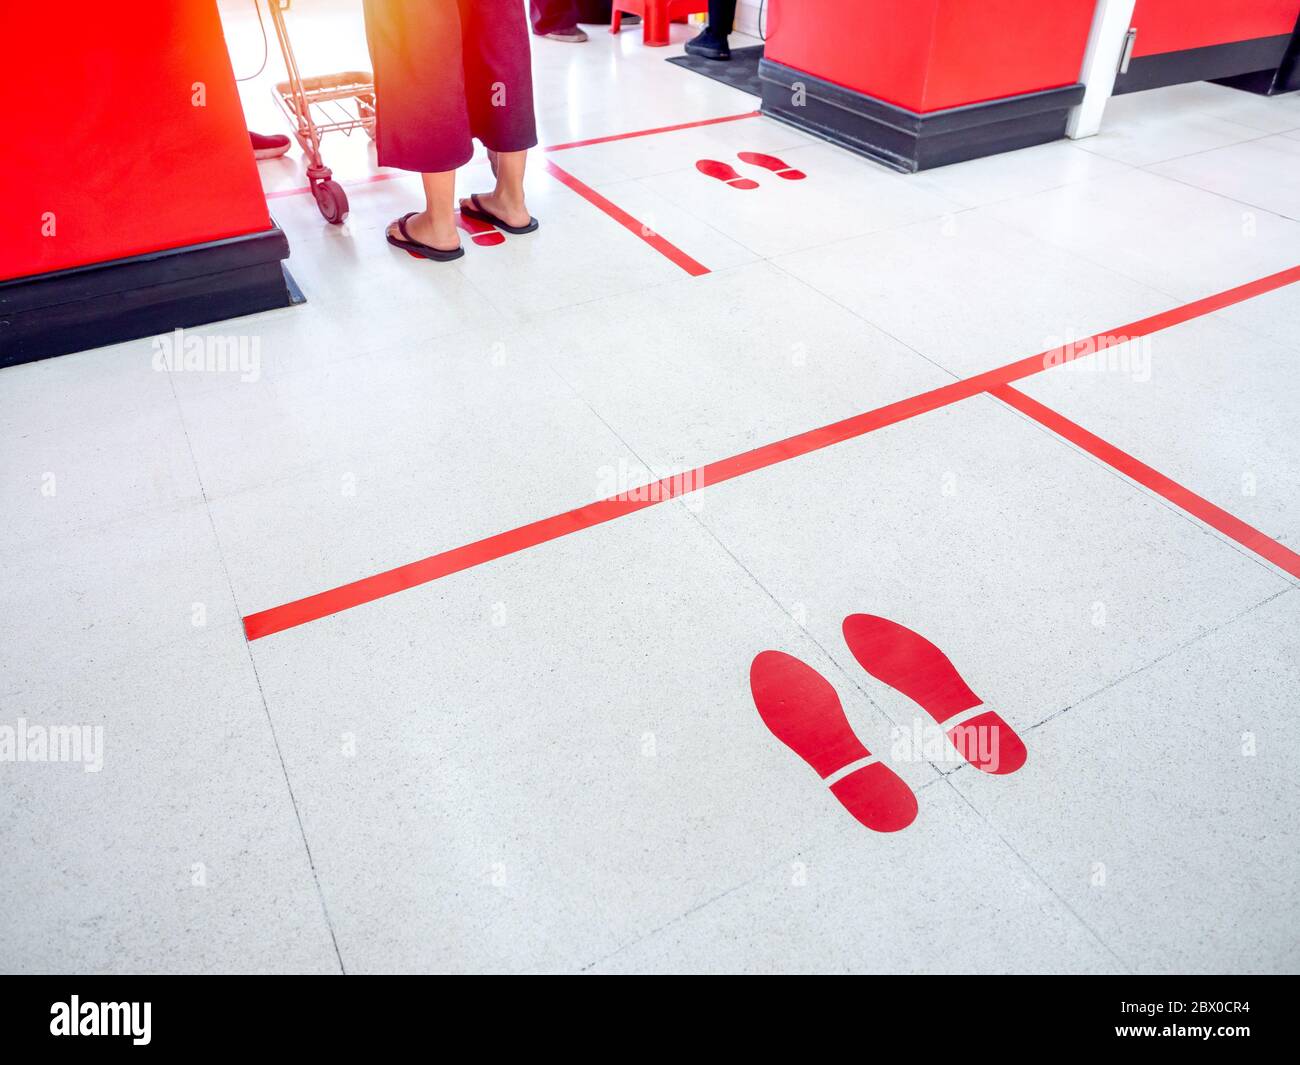 Empreinte rouge et ligne rouge au sol dans le supermarché pour l'avertissement pour garder une distance sociale sûre à protéger contre le coronavirus, concept de distance sociale. Banque D'Images